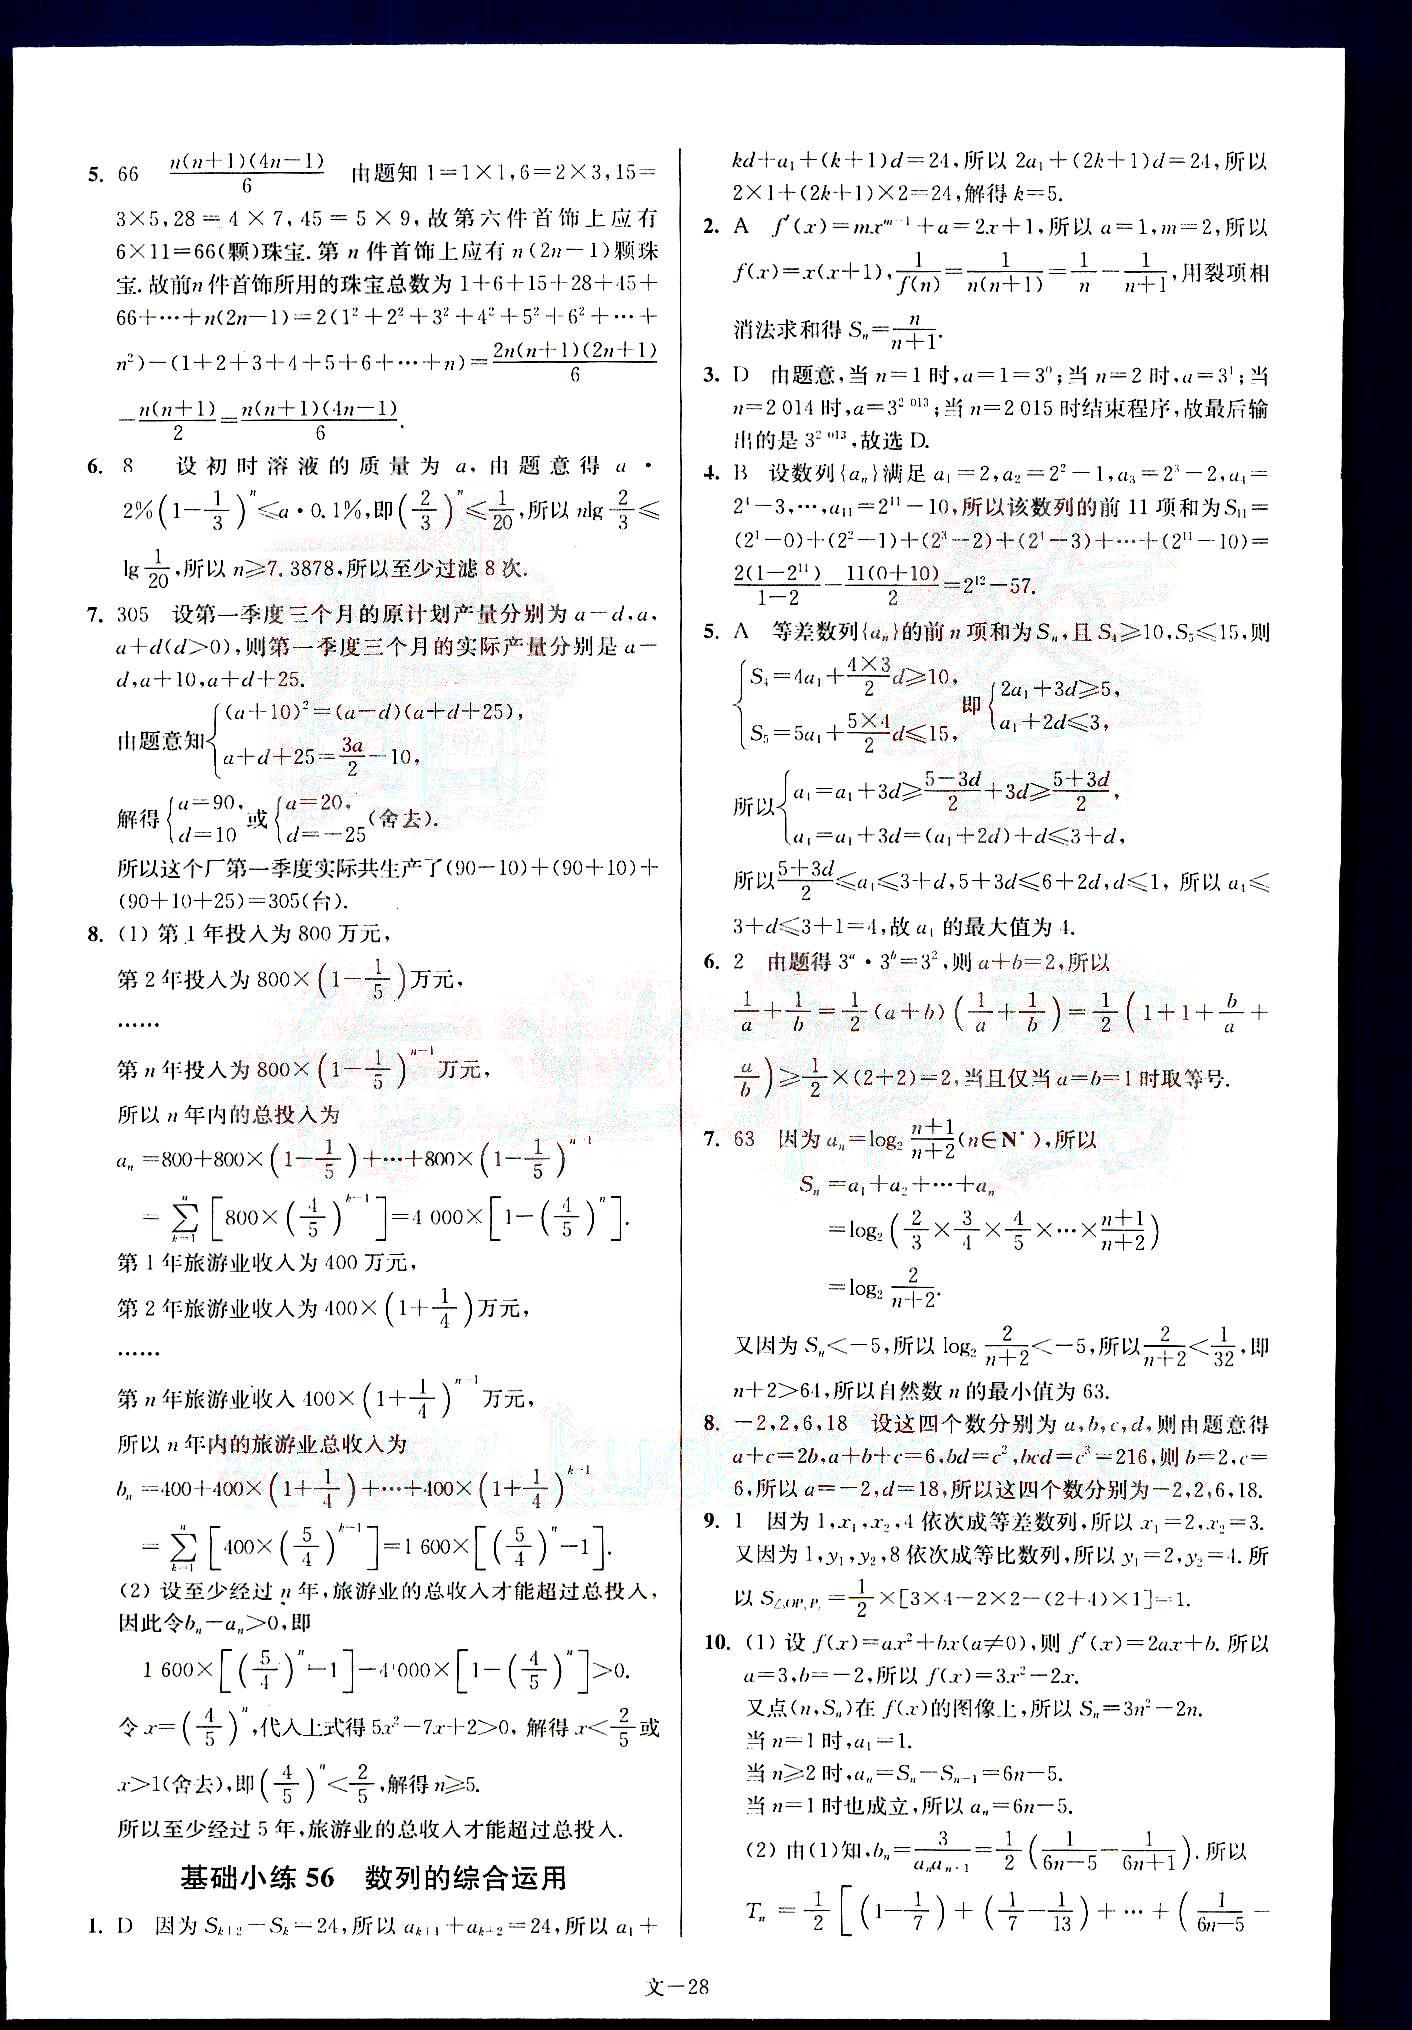 小题狂做-高考数学-文科-最基础篇南京大学出版社 第6部分 [3]